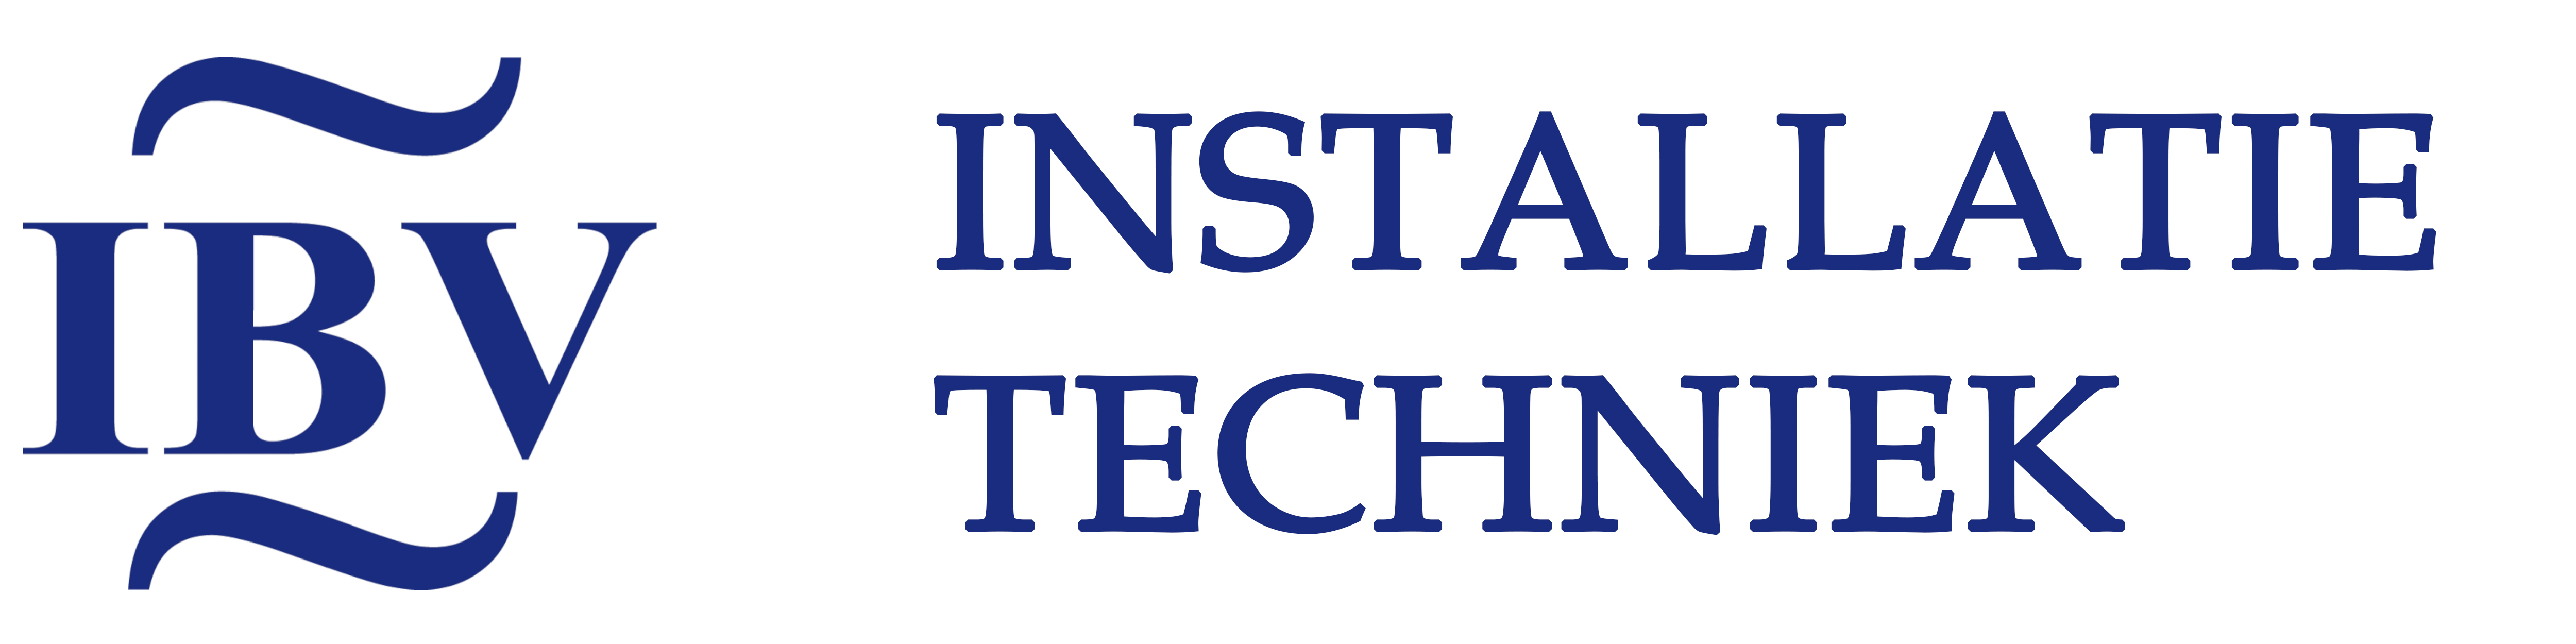 installatie techniek logo